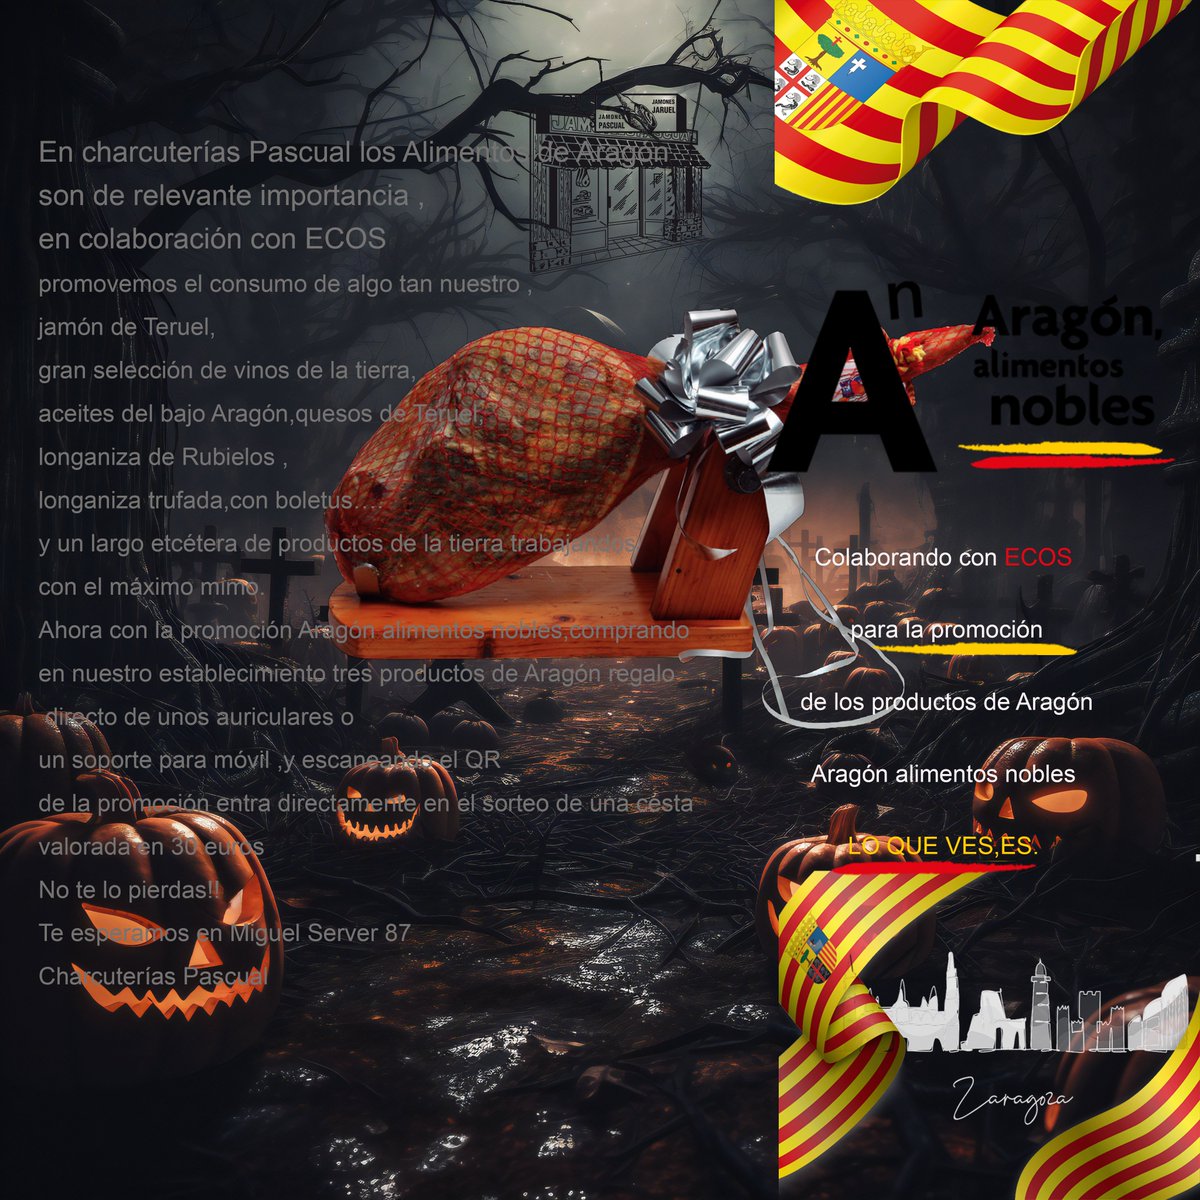 Terroríficamente delicioso.
Halloween en Charcuterías Pascual.
Colaborando con ECOS para la promoción de los productos de Aragón
Aragón alimentos nobles
LO QUE VES,ES.
#ECOS
#LoQueVesEs
#LoQueVesEsLoQueHay